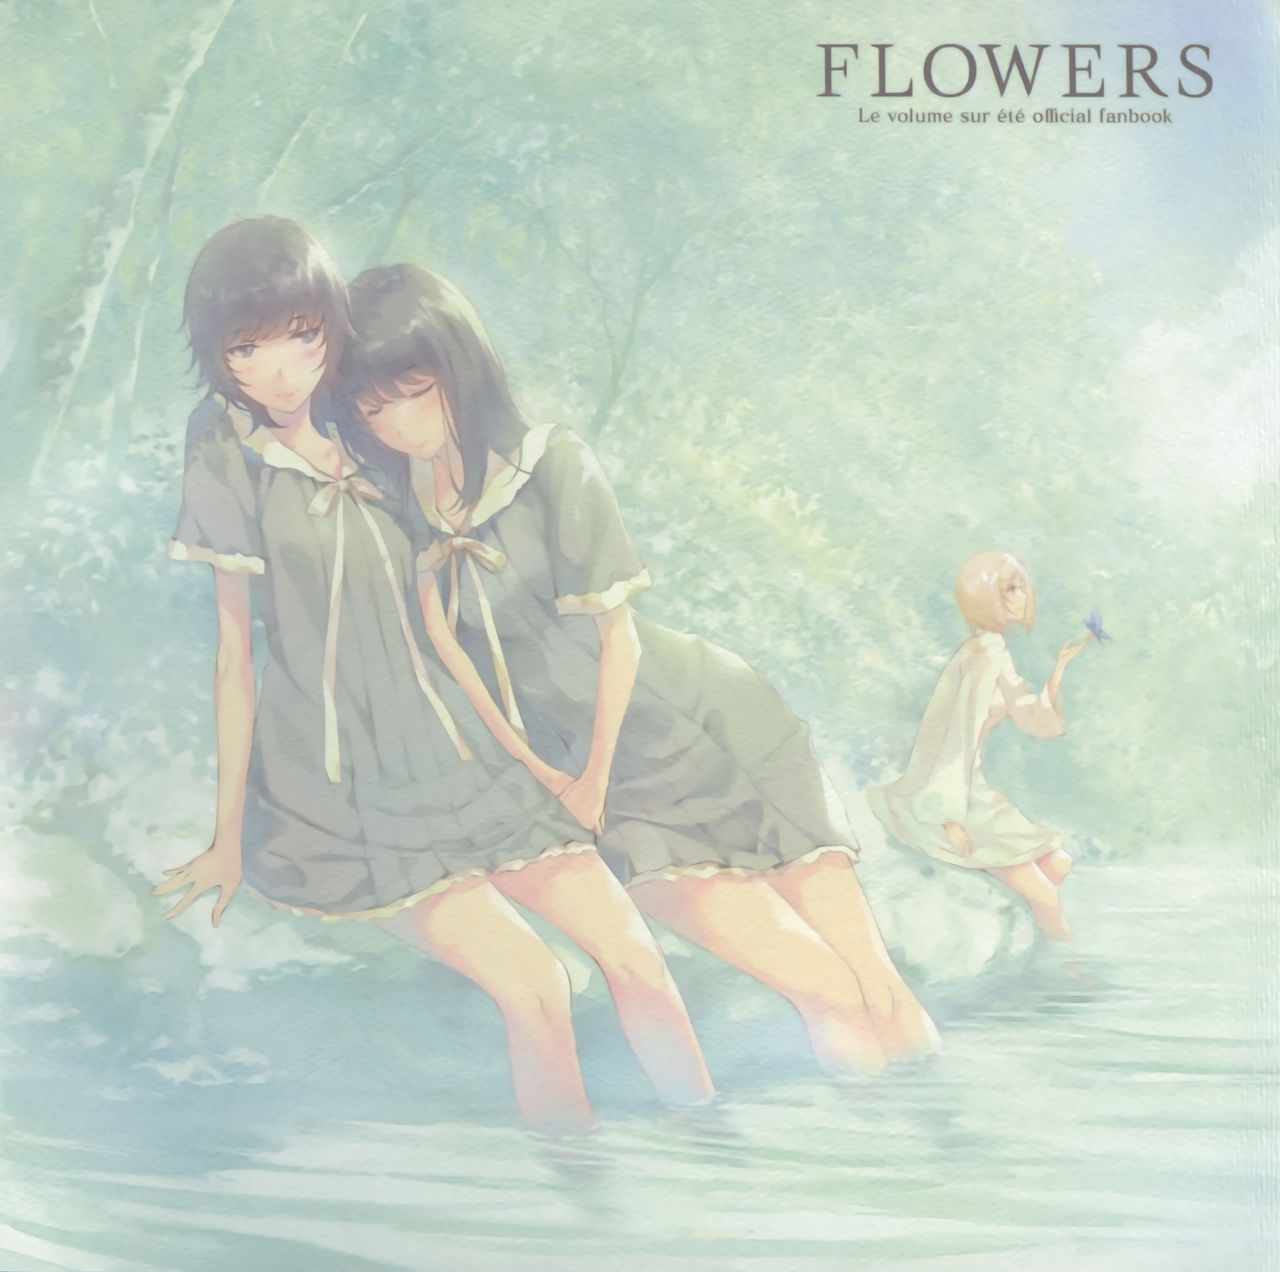 FLOWERS Le volume sur ete official fanbook 0